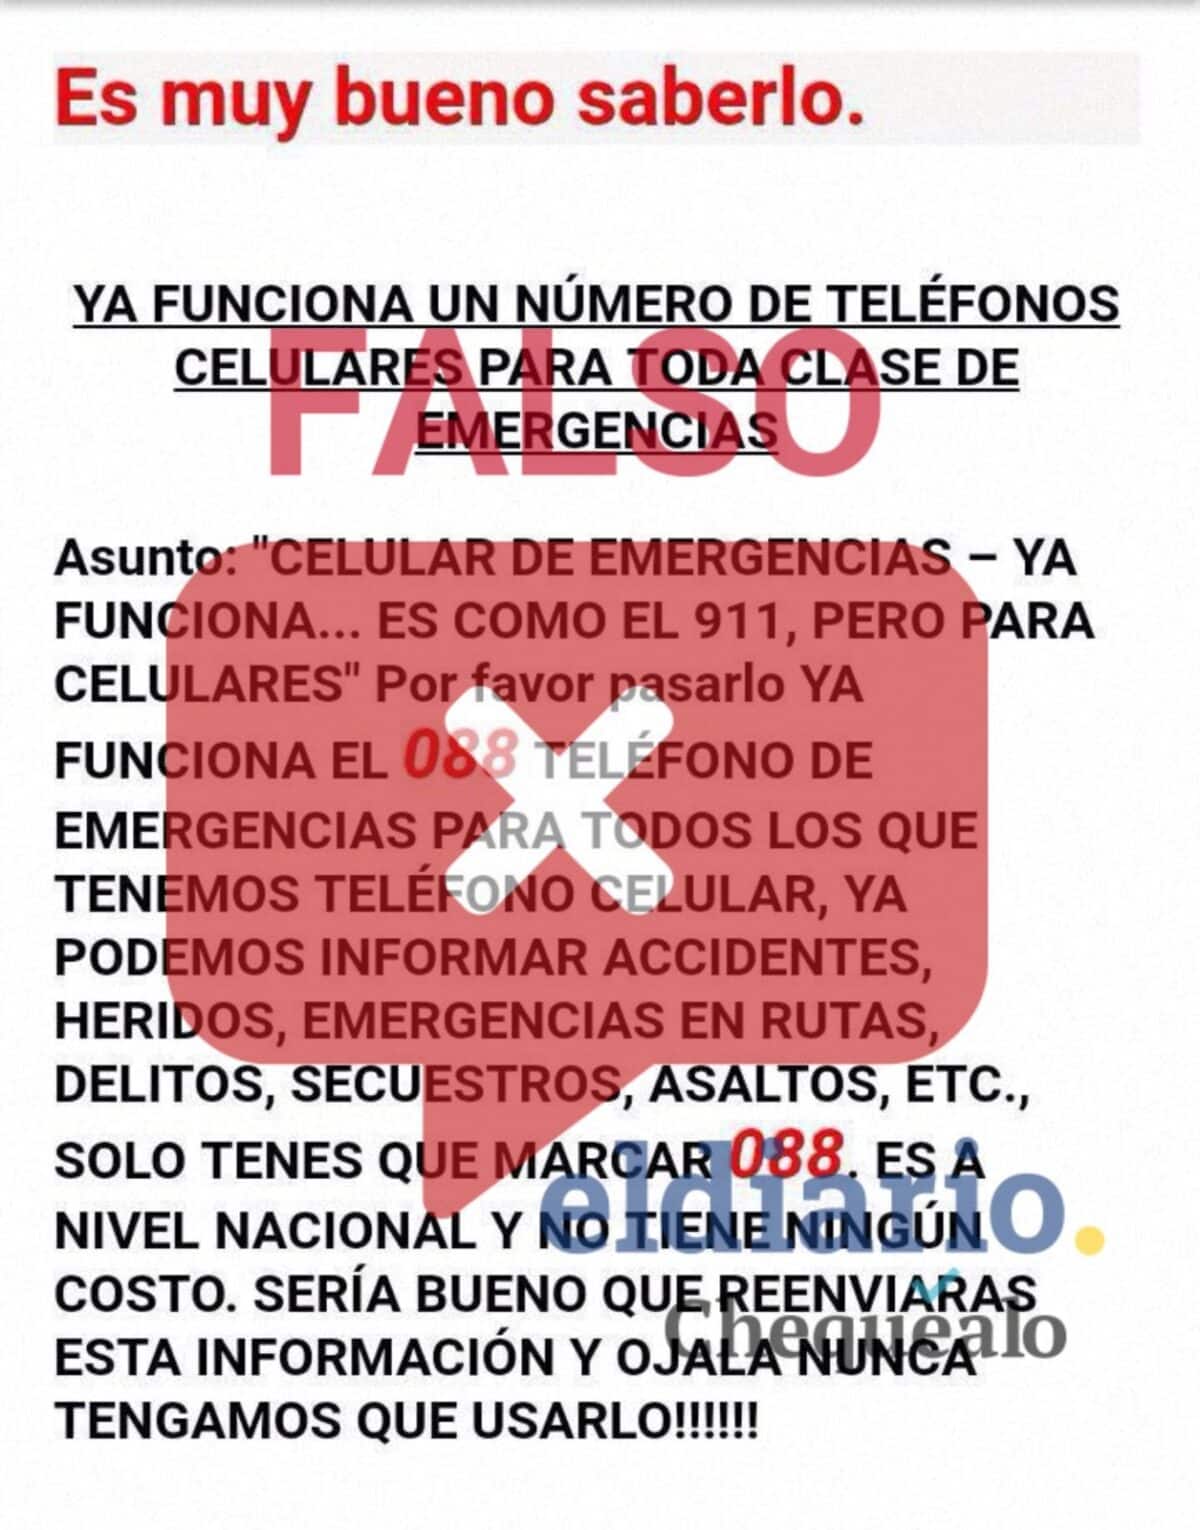 ¿En Venezuela funciona el 088 como número de emergencia en celulares?